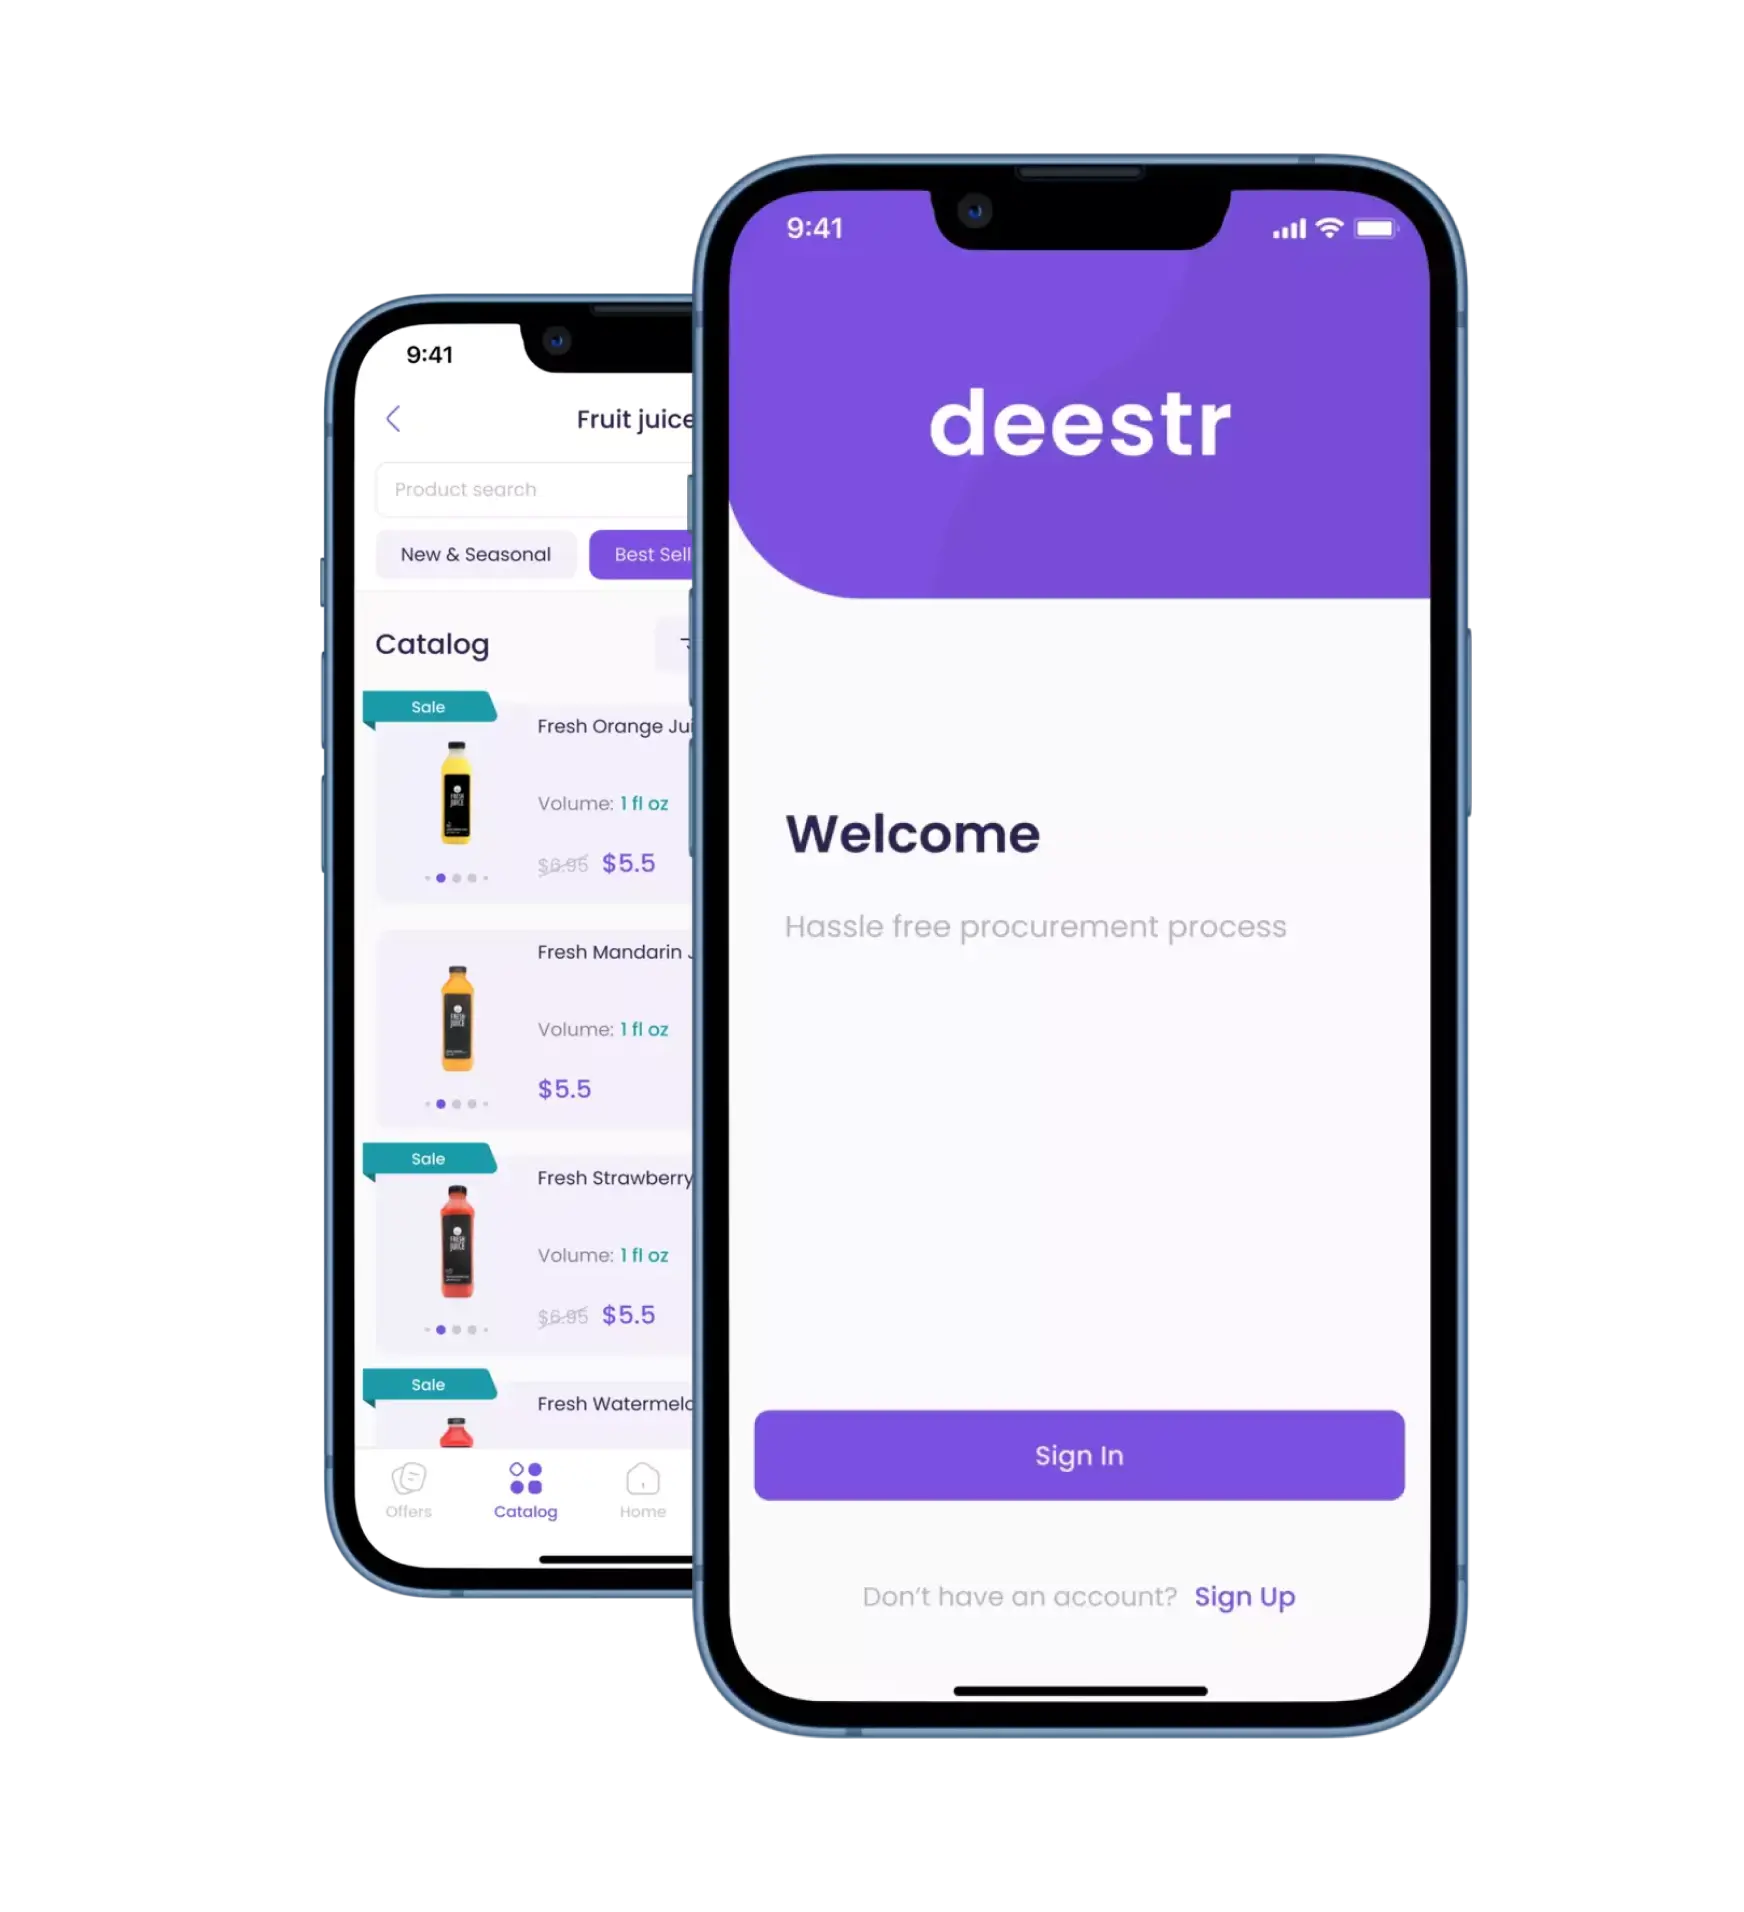 b2b deestr wholesale ordering app